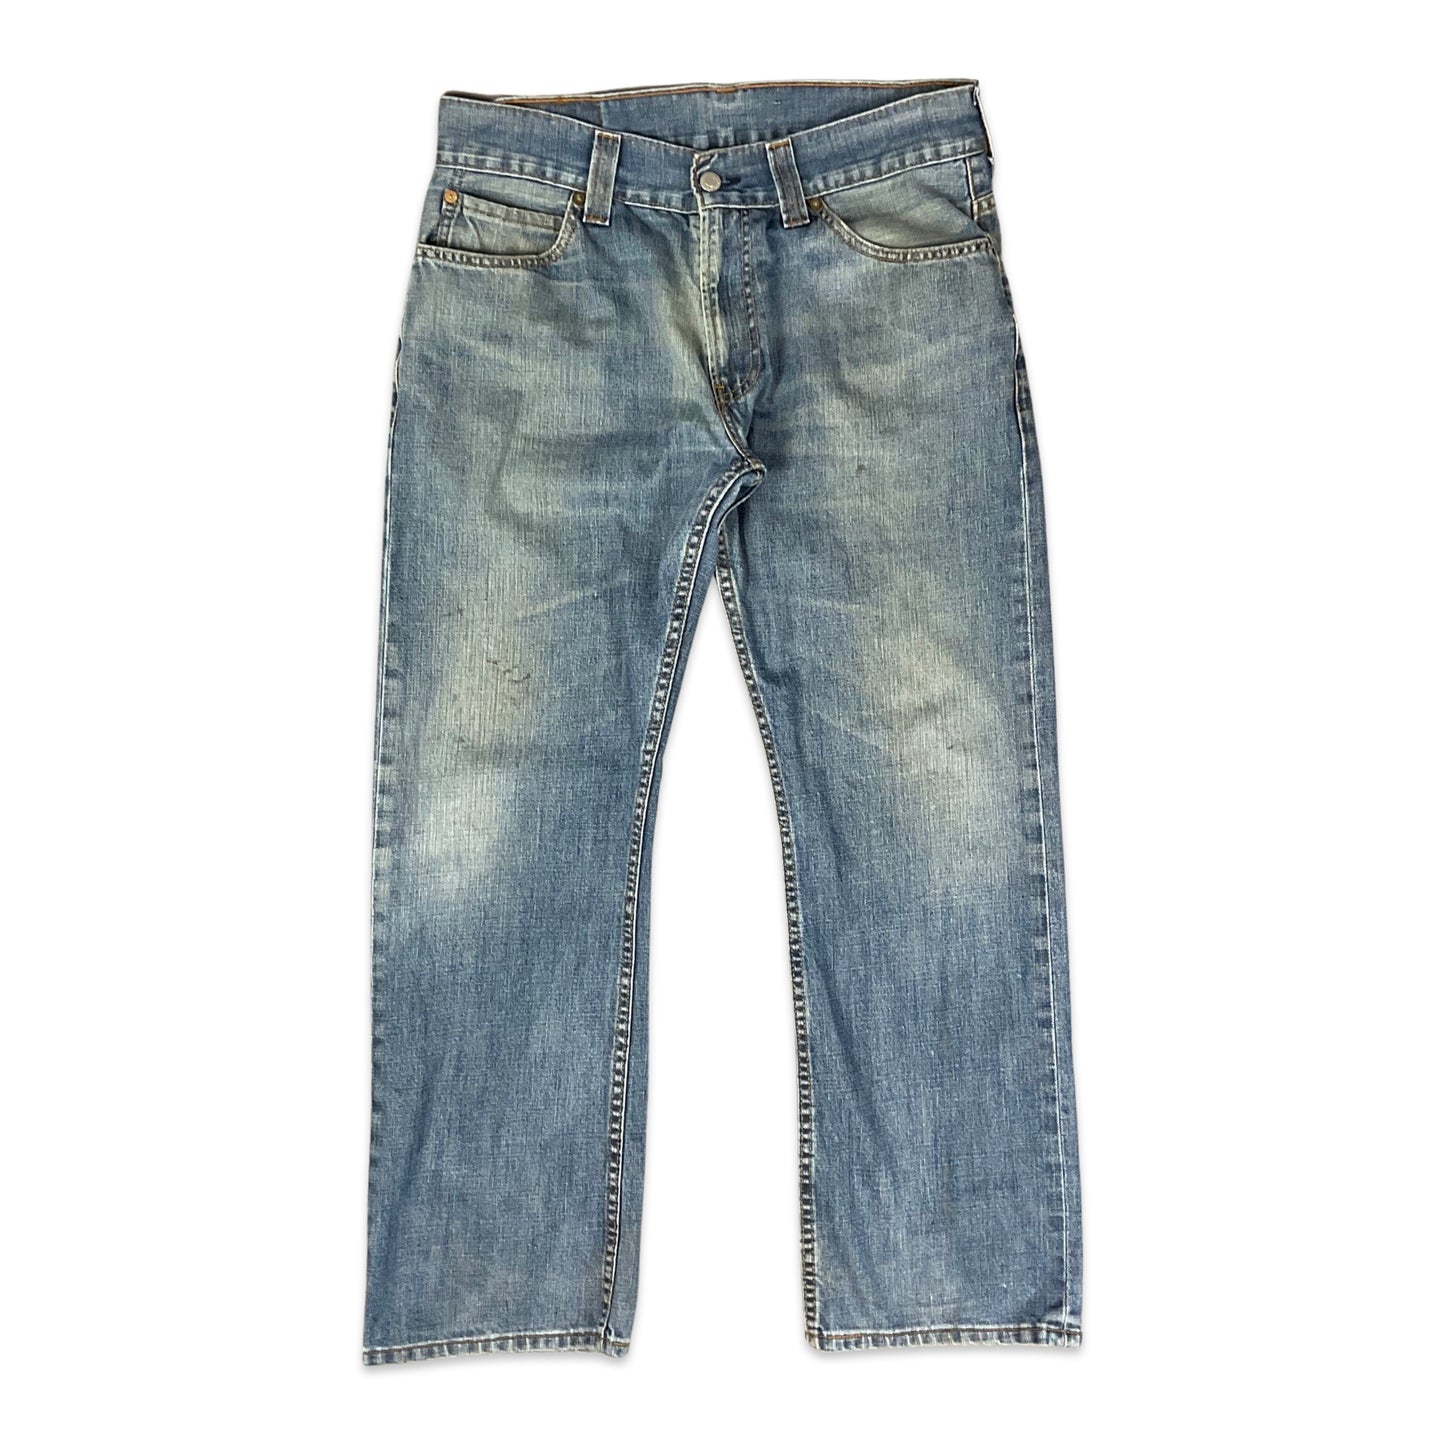 Vintage Levi's 506 Blue Jeans 34W 29L